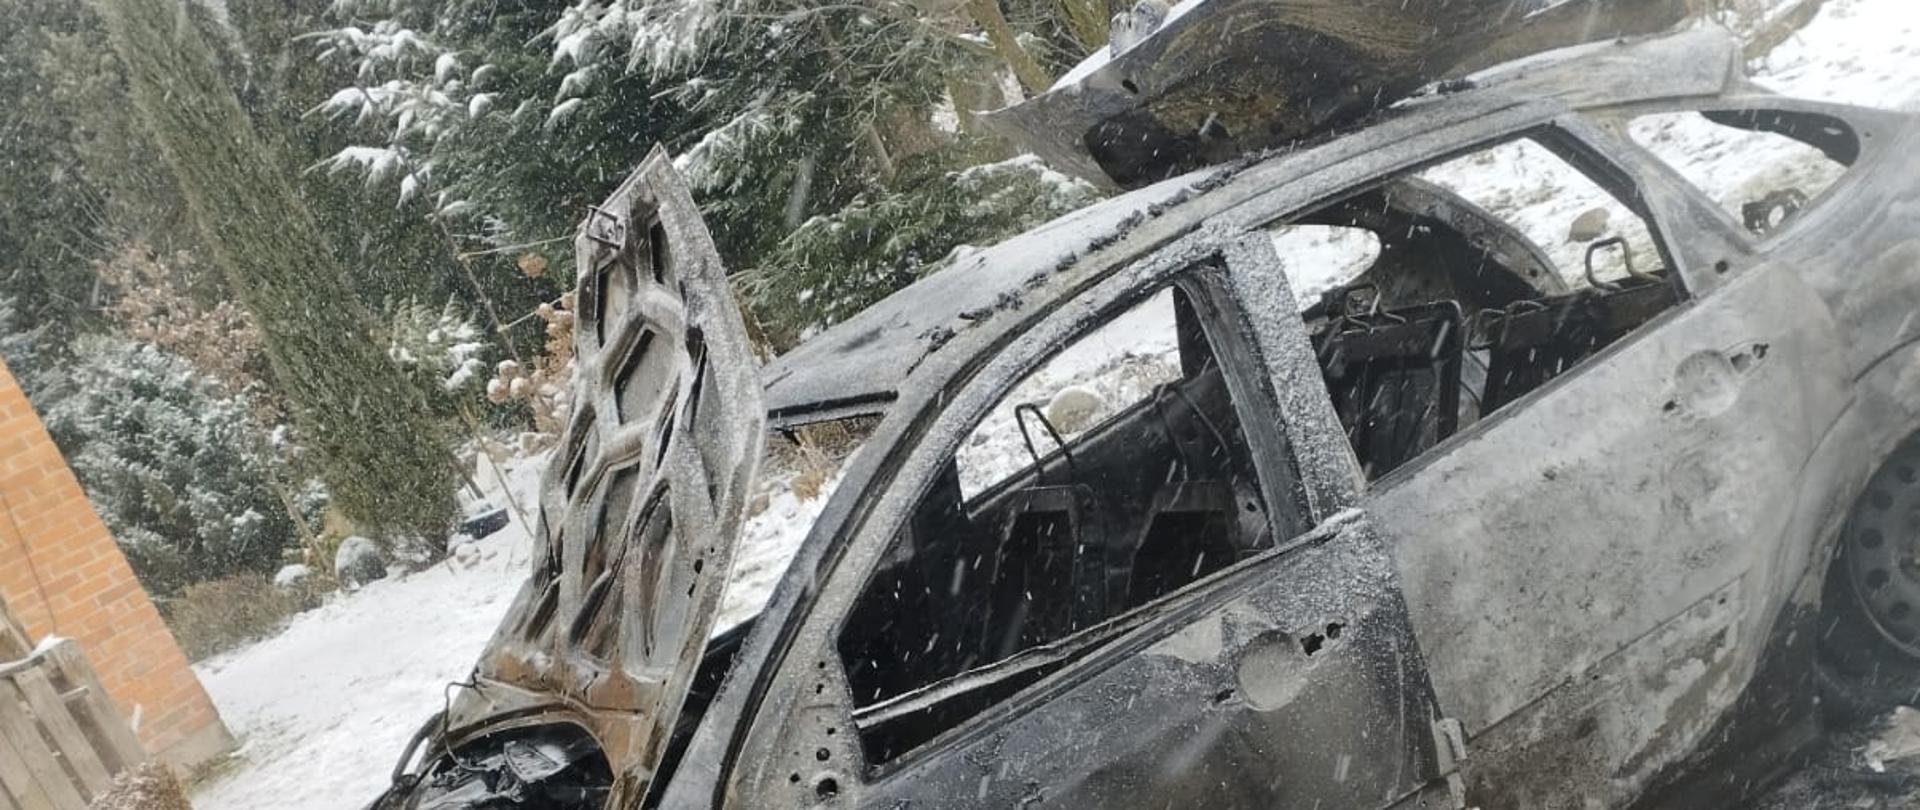 Na zdjęciu całkowicie spalony pojazd. Zdjęcie w ciągu dnia. Widać śnieg. W tle drzewa.